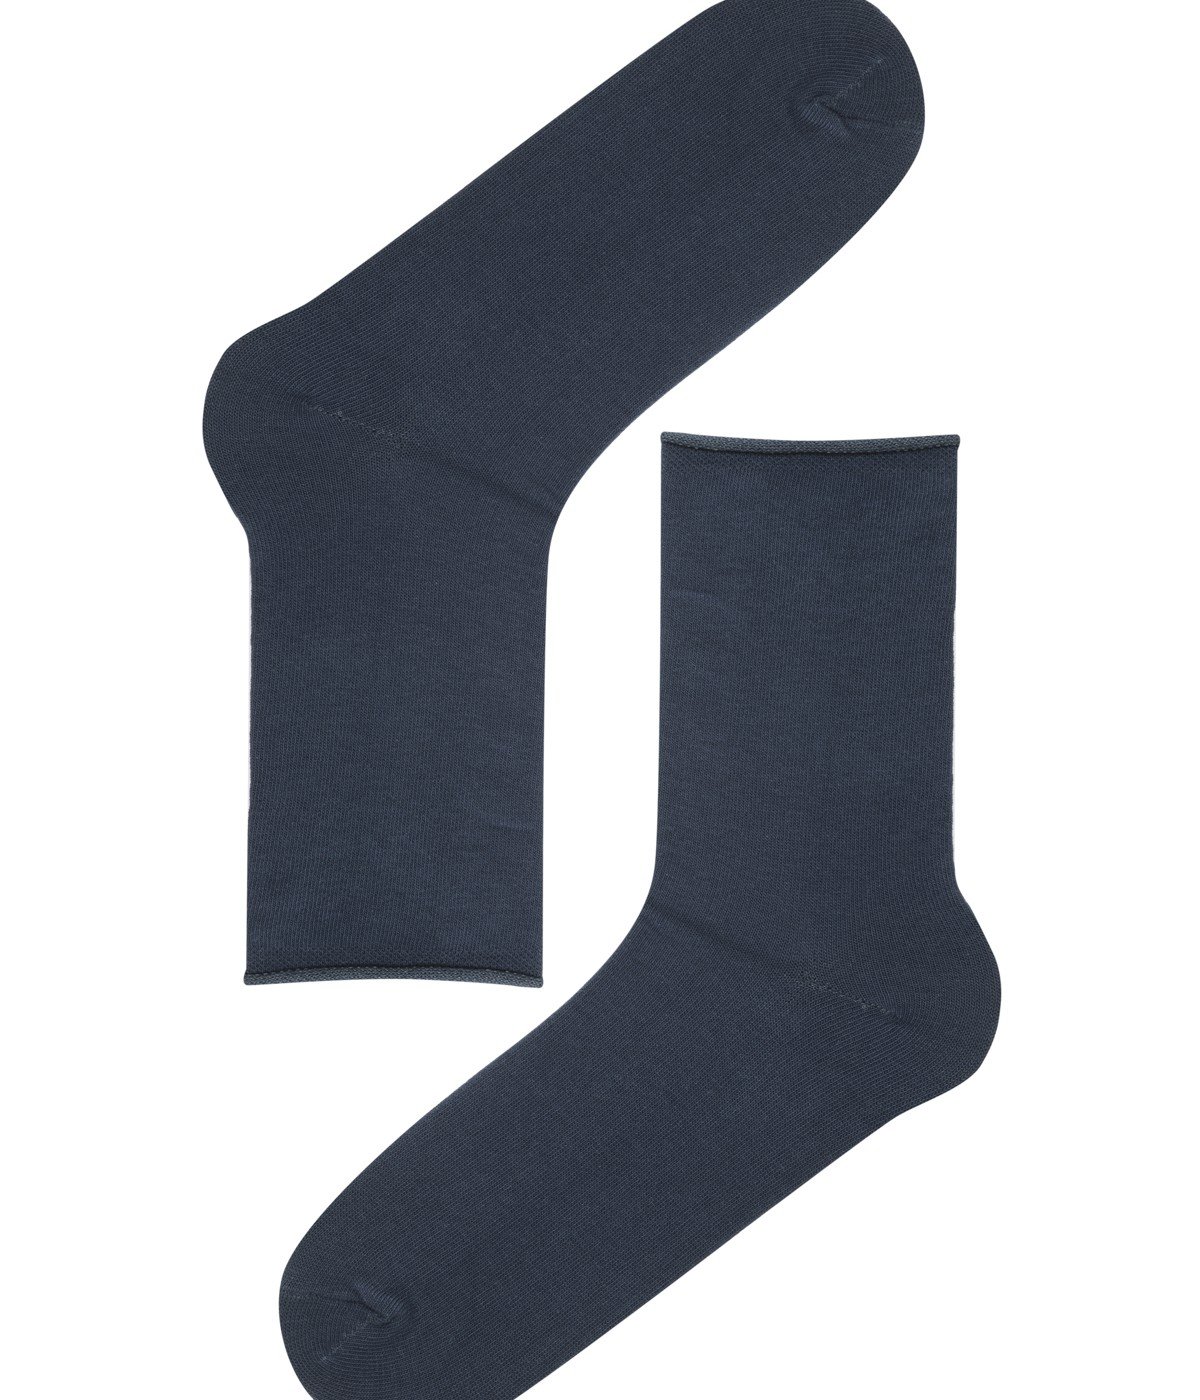 Simple 4 in 1 Socks